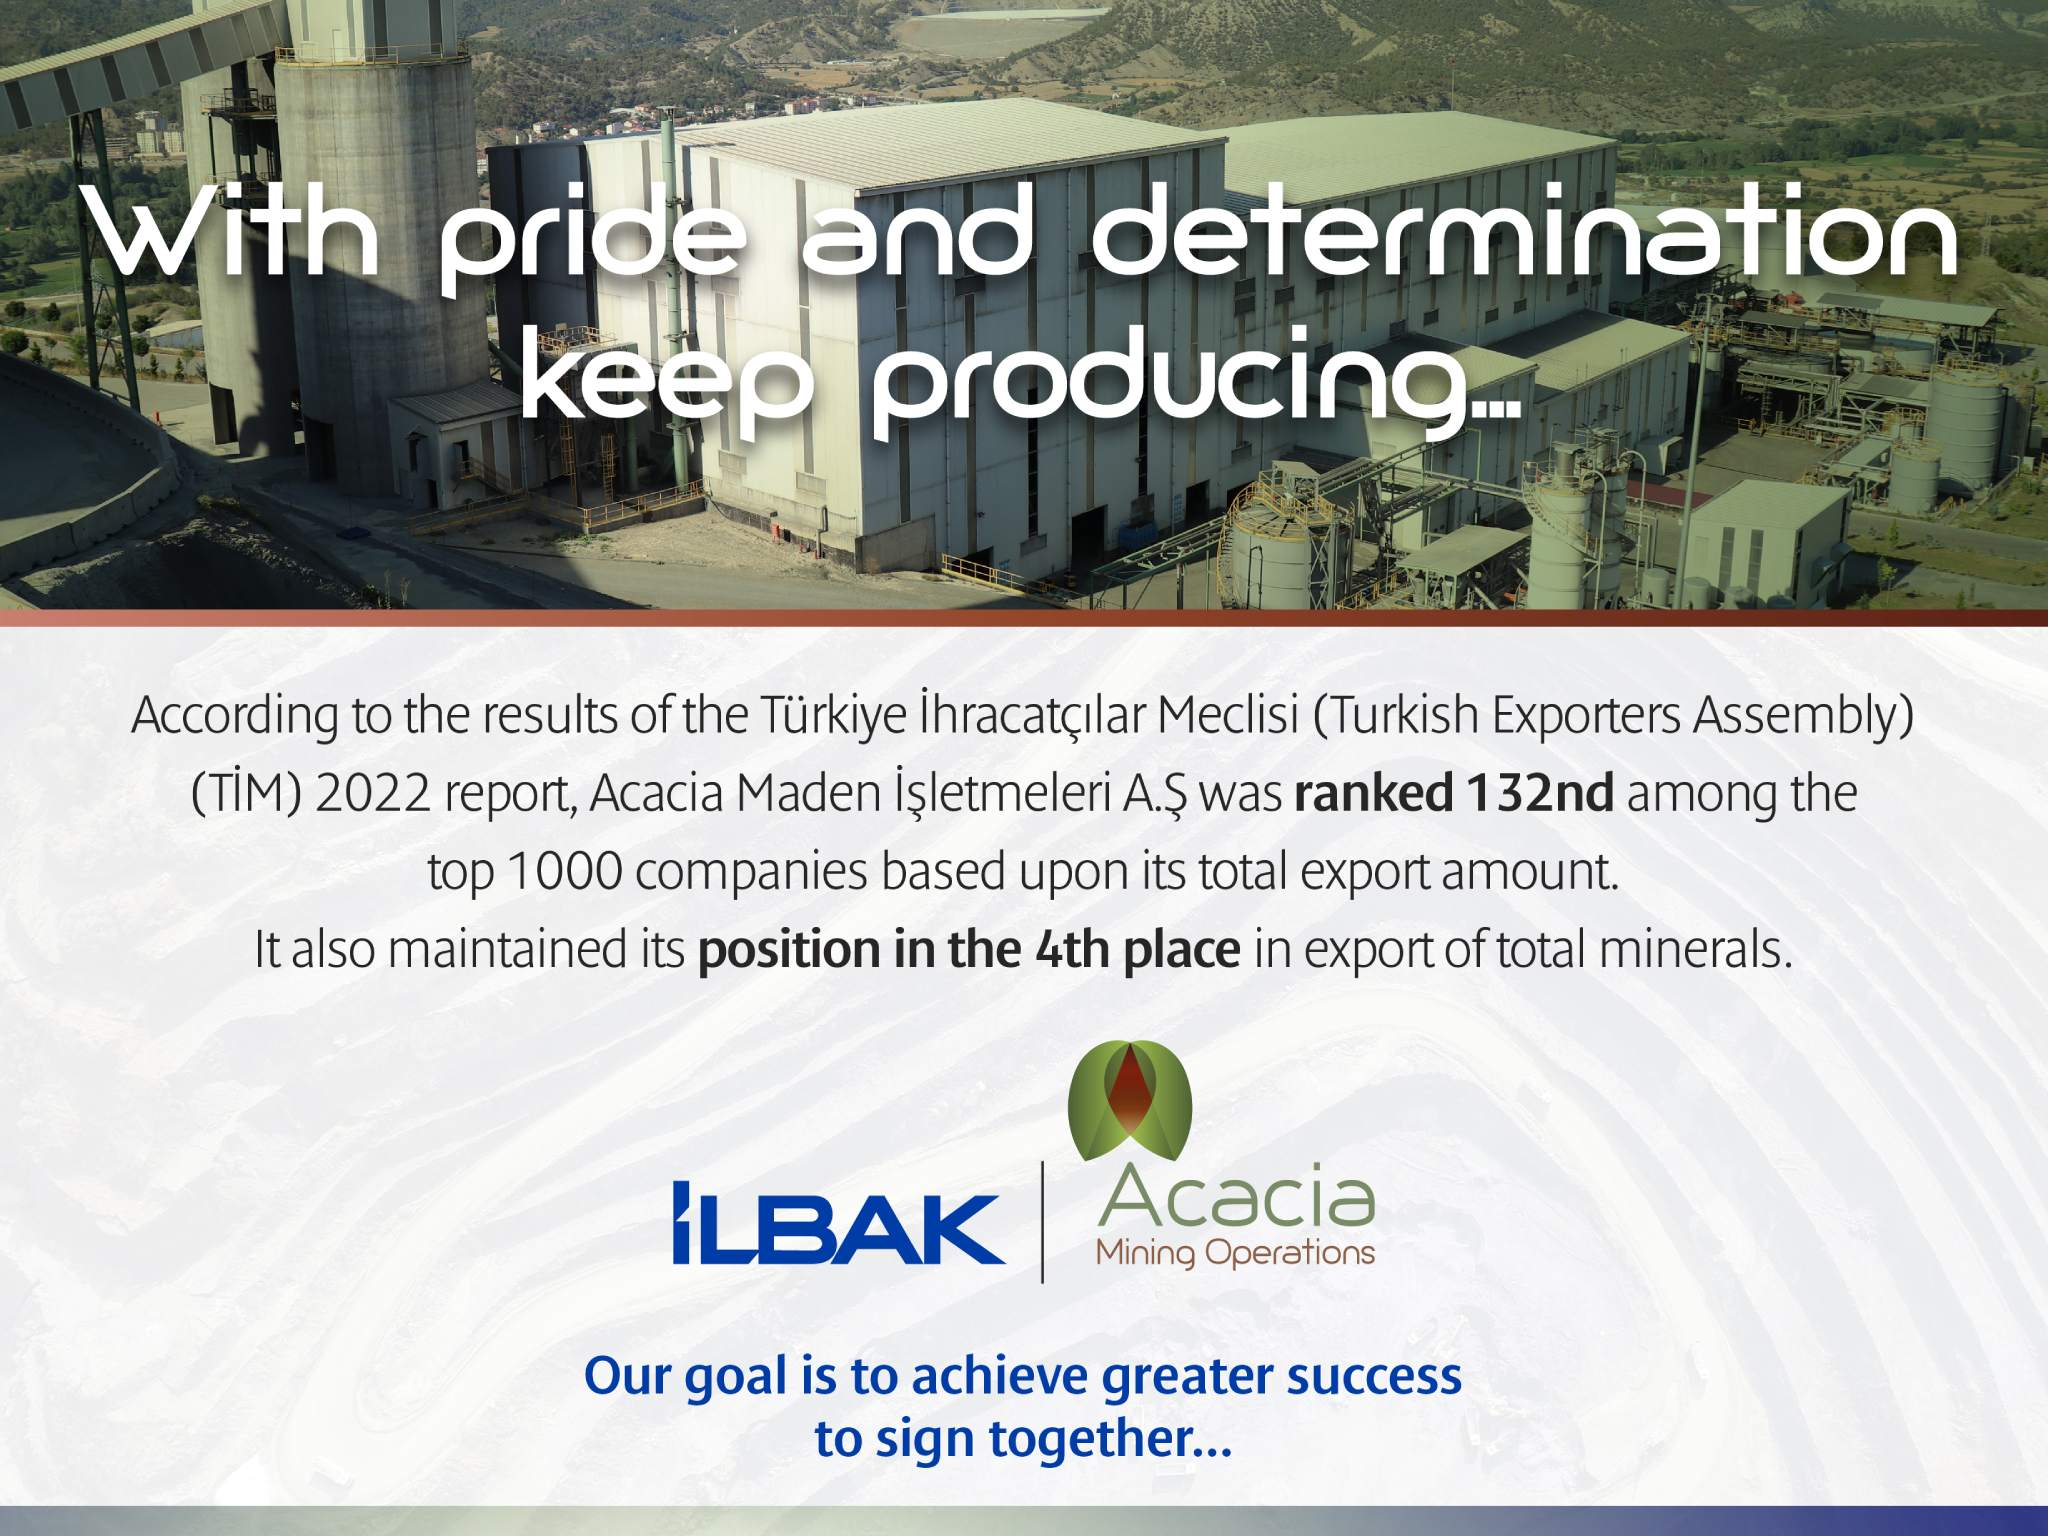 Acacia Maden İşletmeleri A.Ş, Turkish Exporters Assembly